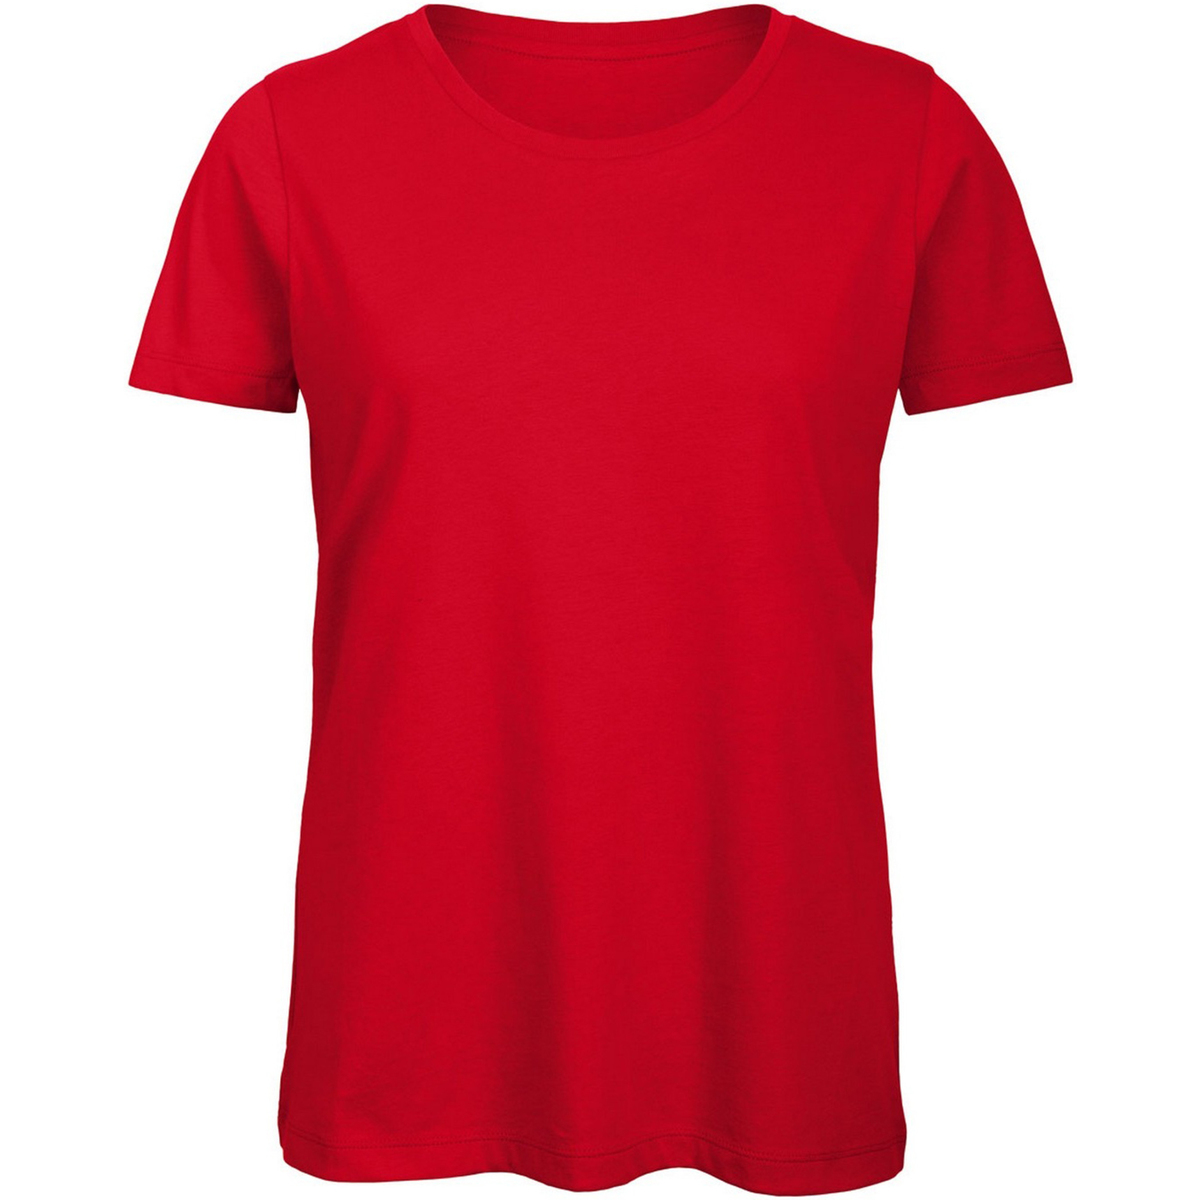 Vêtements Femme T-shirts manches longues Dolman-sleeve knit jacket Neutrals TW043 Rouge